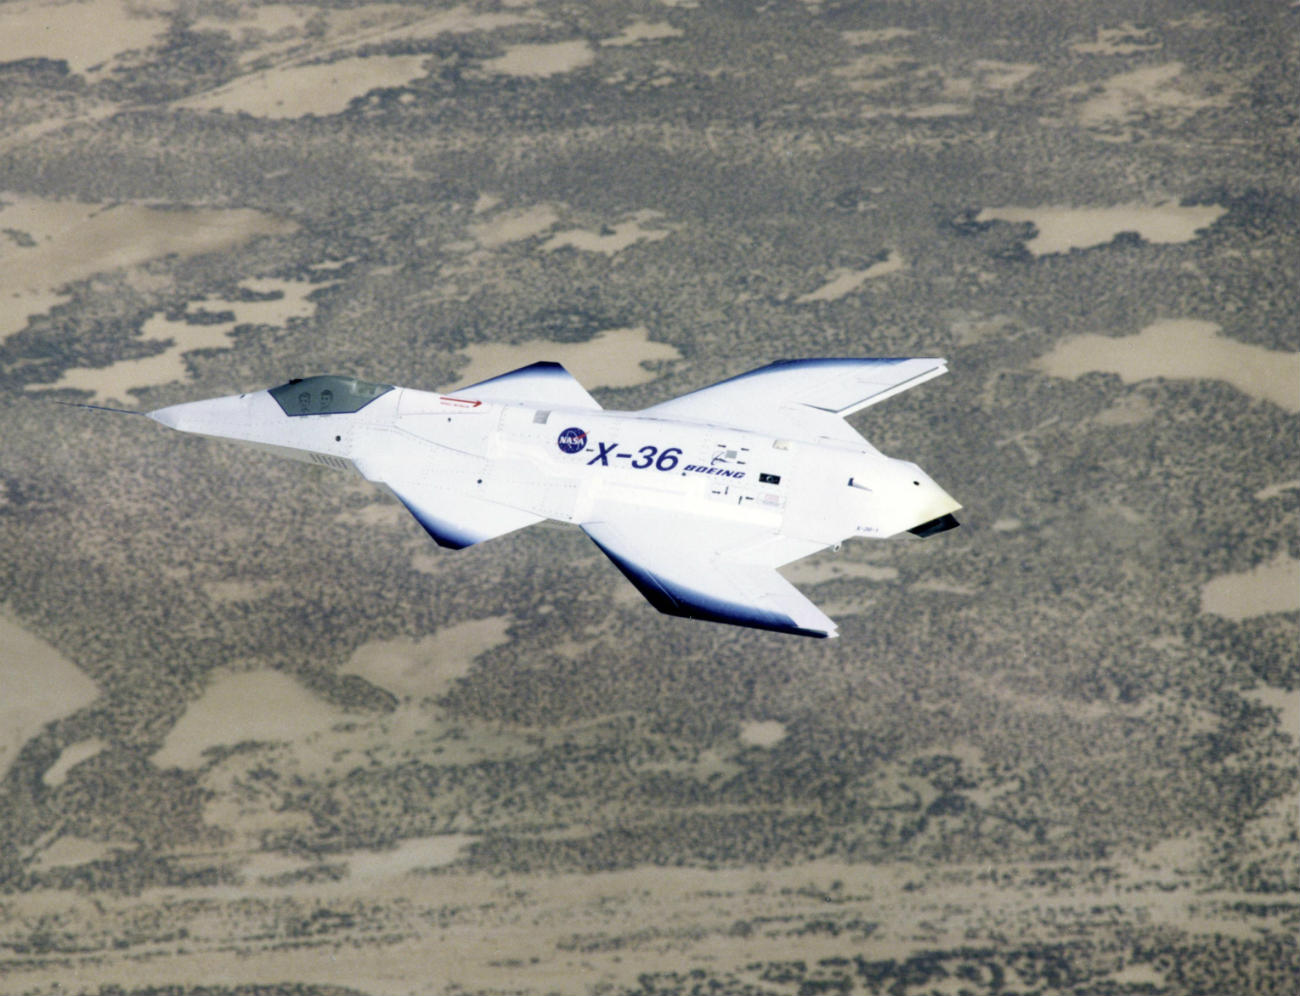 Boeing X-36 cruising altitude